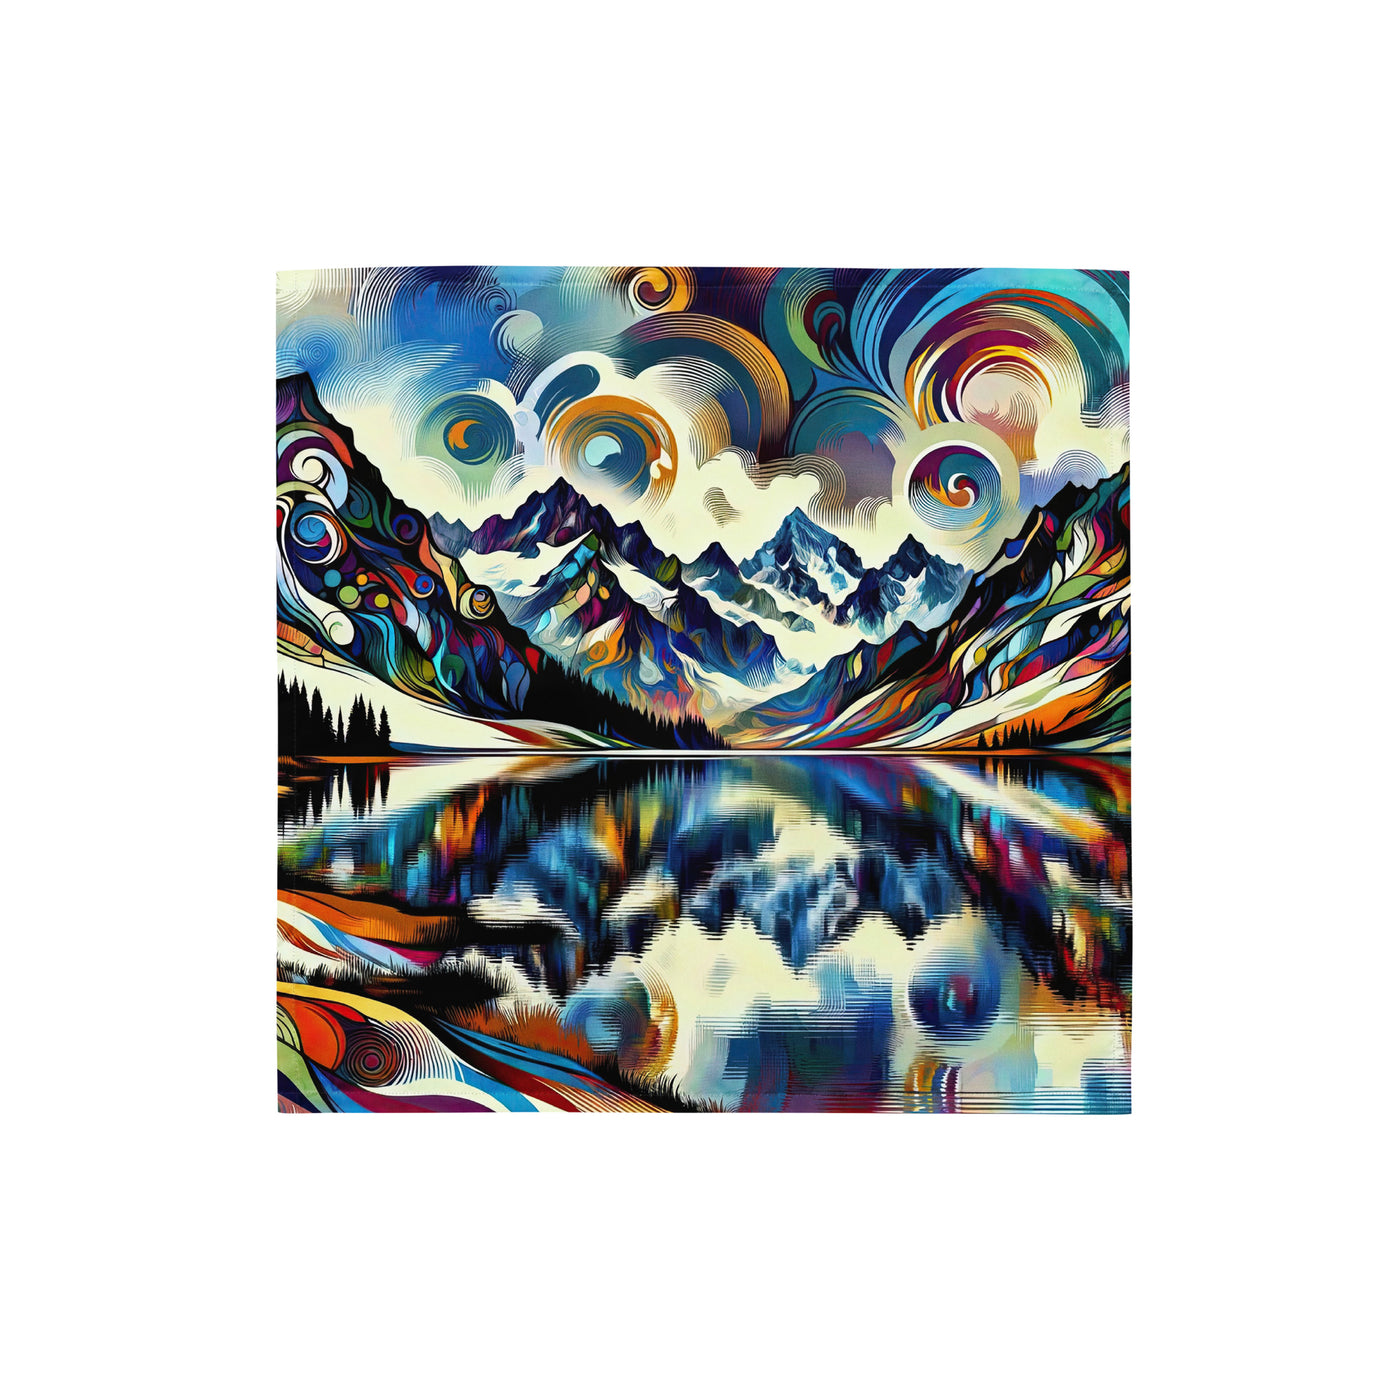 Alpensee im Zentrum eines abstrakt-expressionistischen Alpen-Kunstwerks - Bandana (All-Over Print) berge xxx yyy zzz S